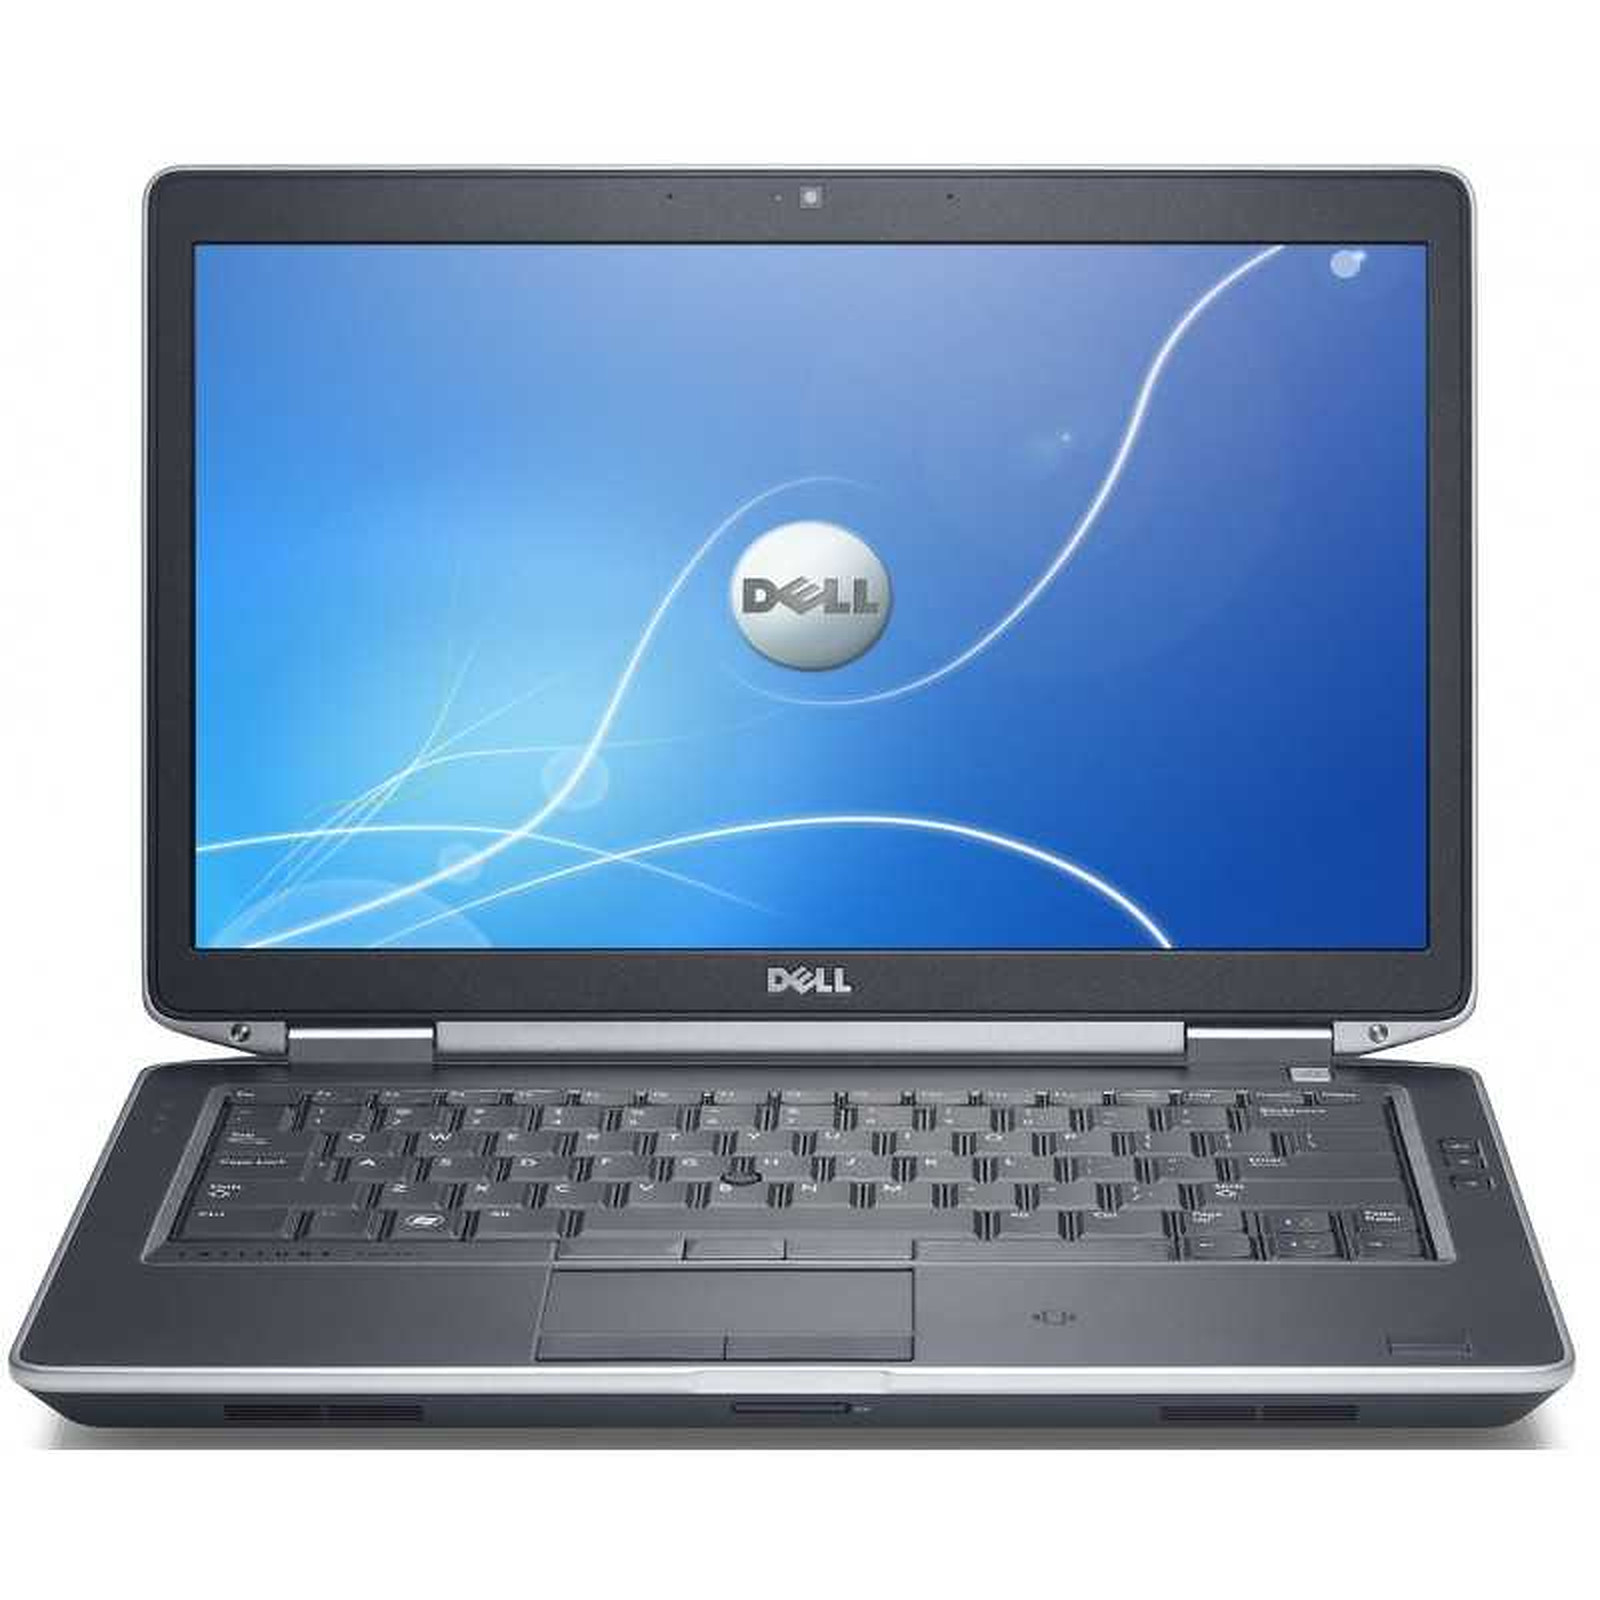 Dell Latitude E6430s (E6430s-B-5252) (E6430s-B) · Reconditionne - PC portable reconditionne Dell